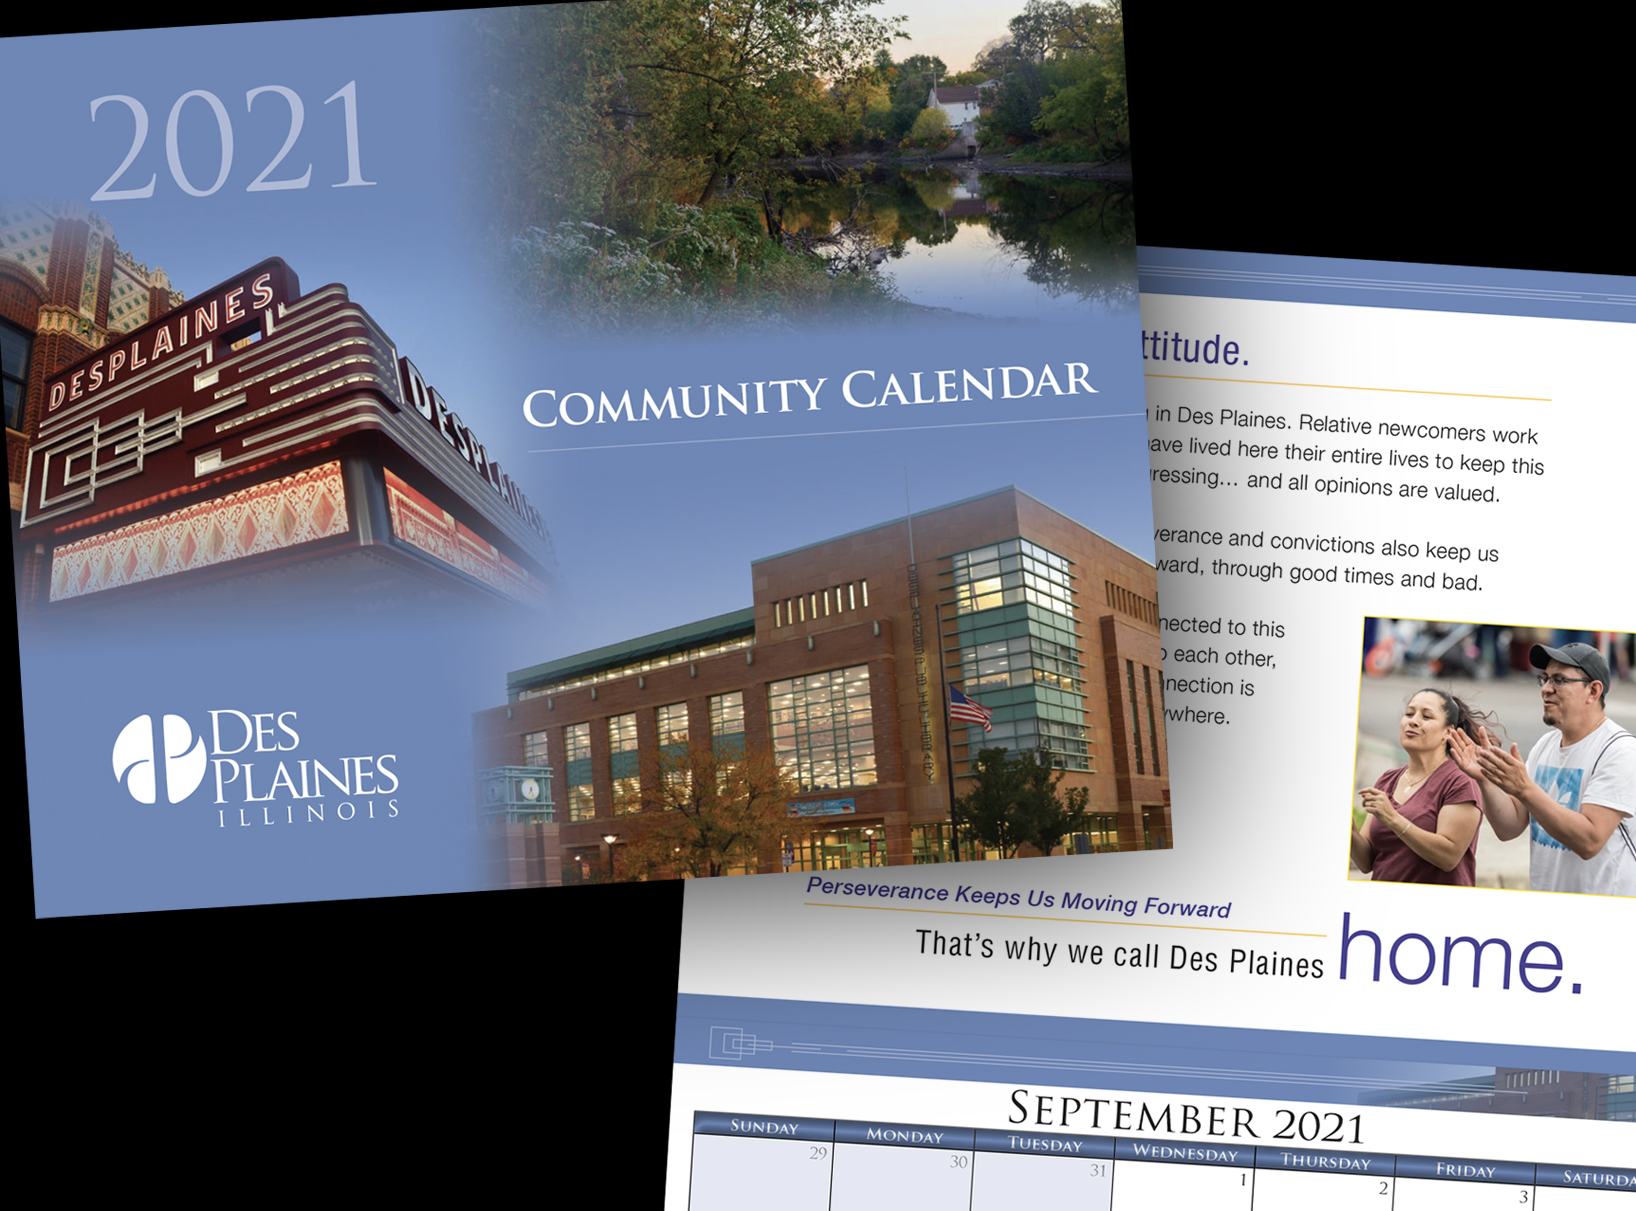 City of Des Plaines community calendar